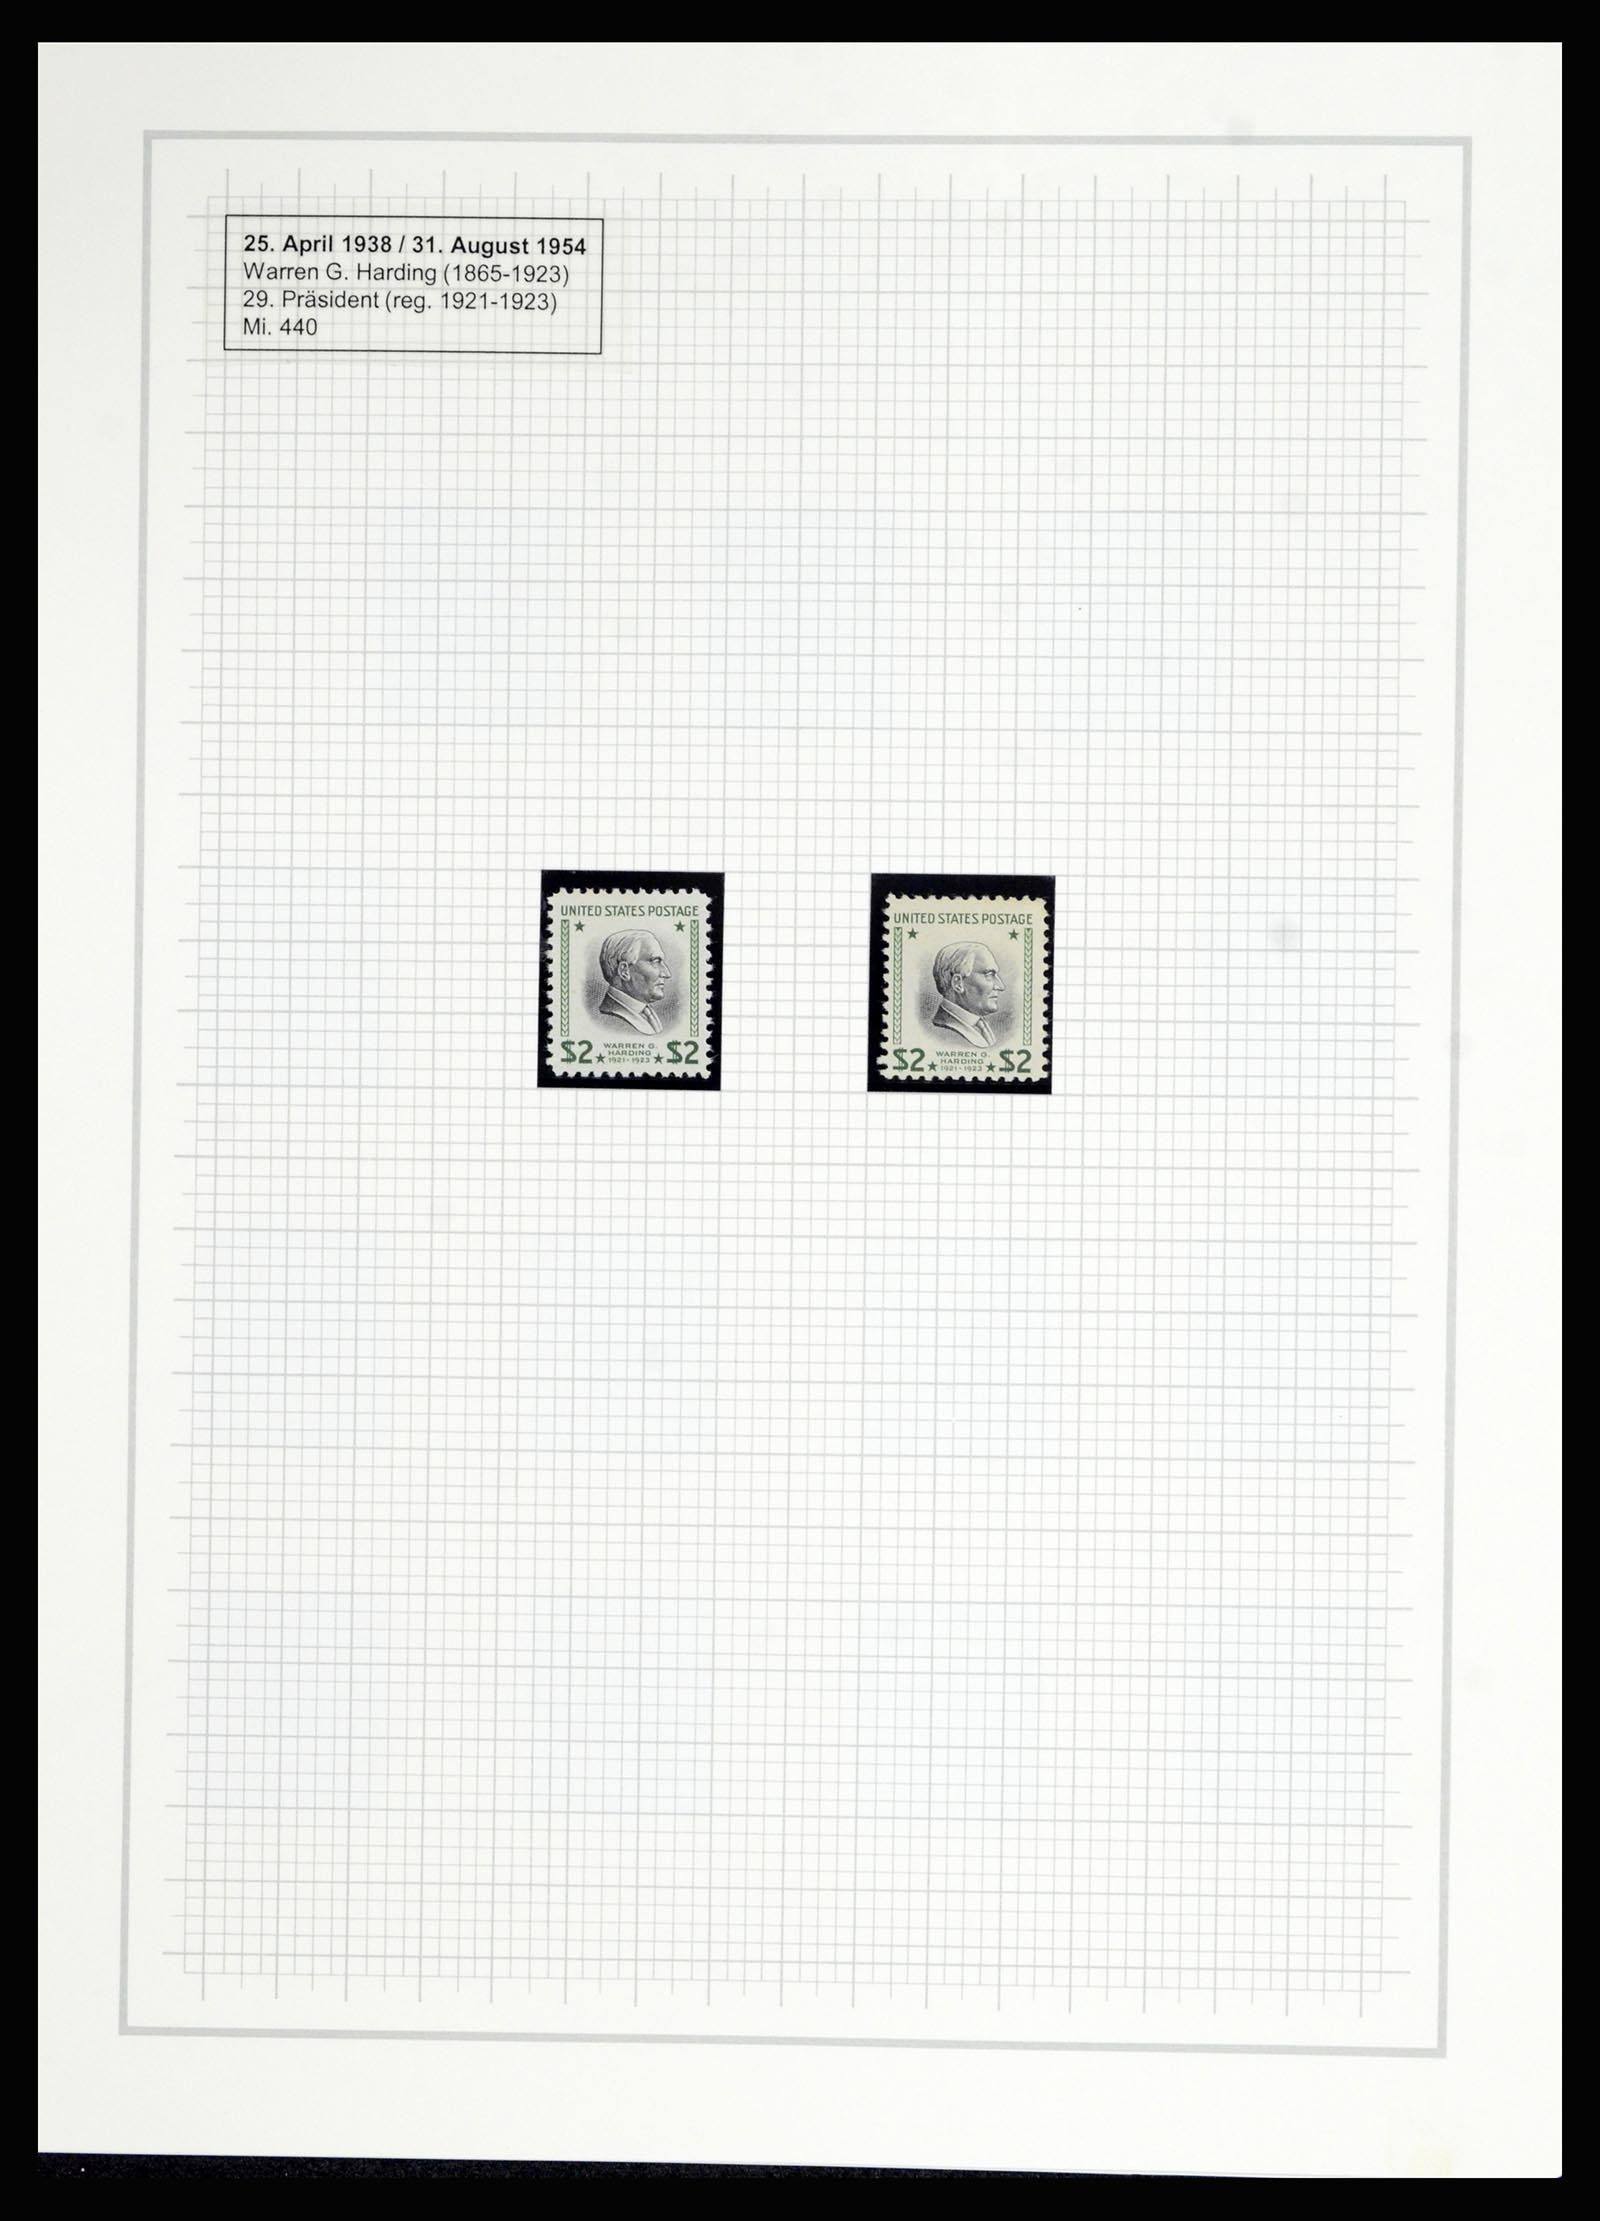 36909 311 - Stamp collection 36909 USA 1938-1954.